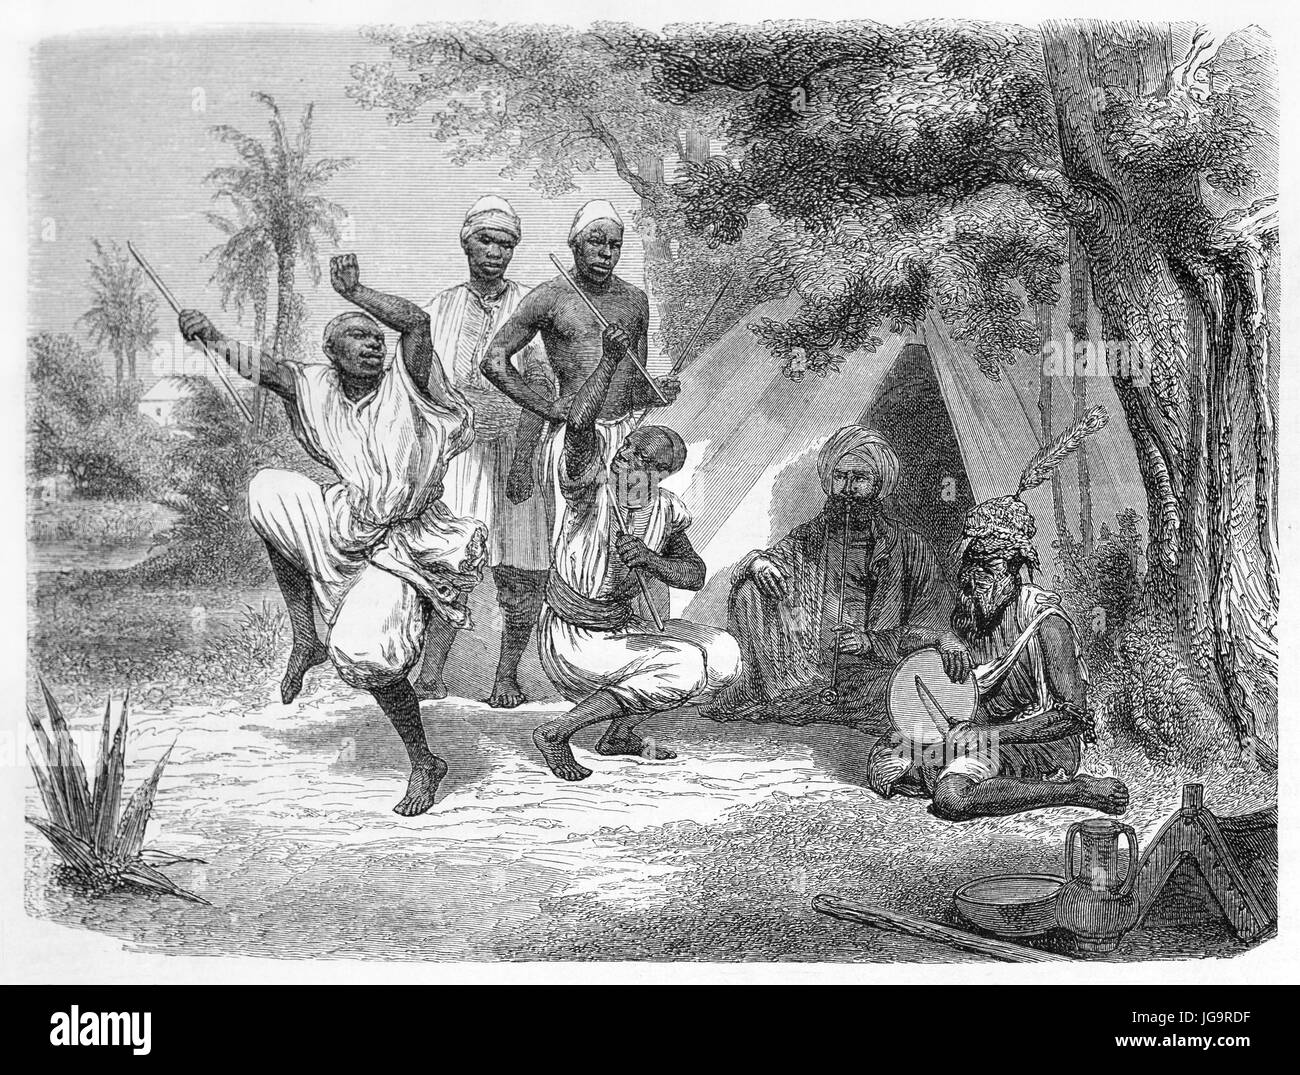 Vieille illustration danse ethniques africains dans Ezzeribé ( ?). Créé par Hadamard après photo par auteur inconnu, publié sur le Tour du monde, par Banque D'Images